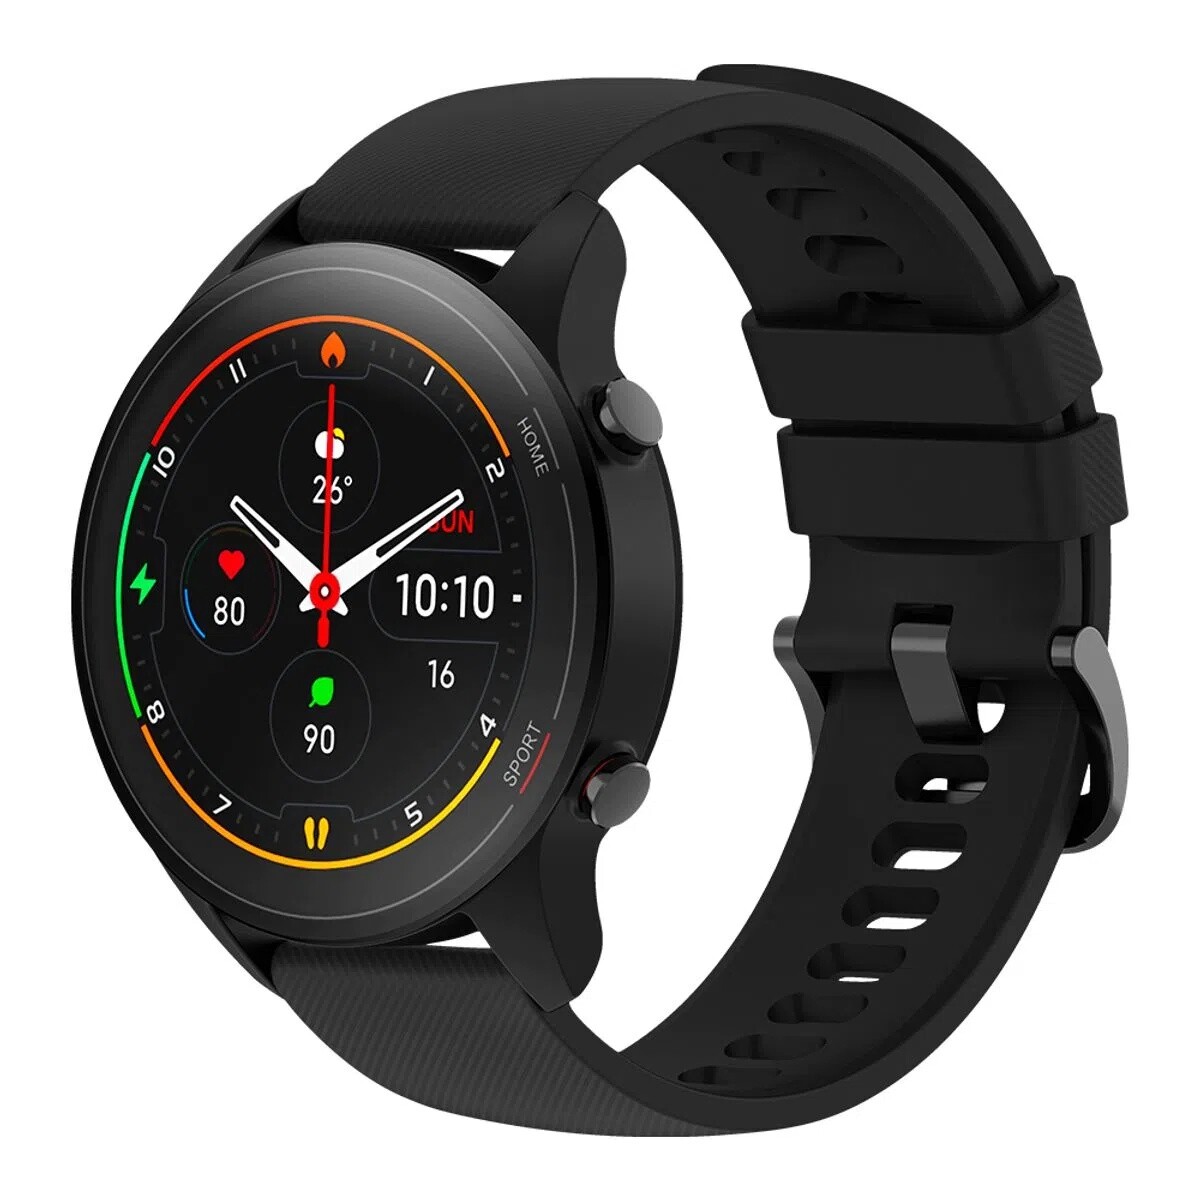 Smartwatch mi watch xiaomi - Black 